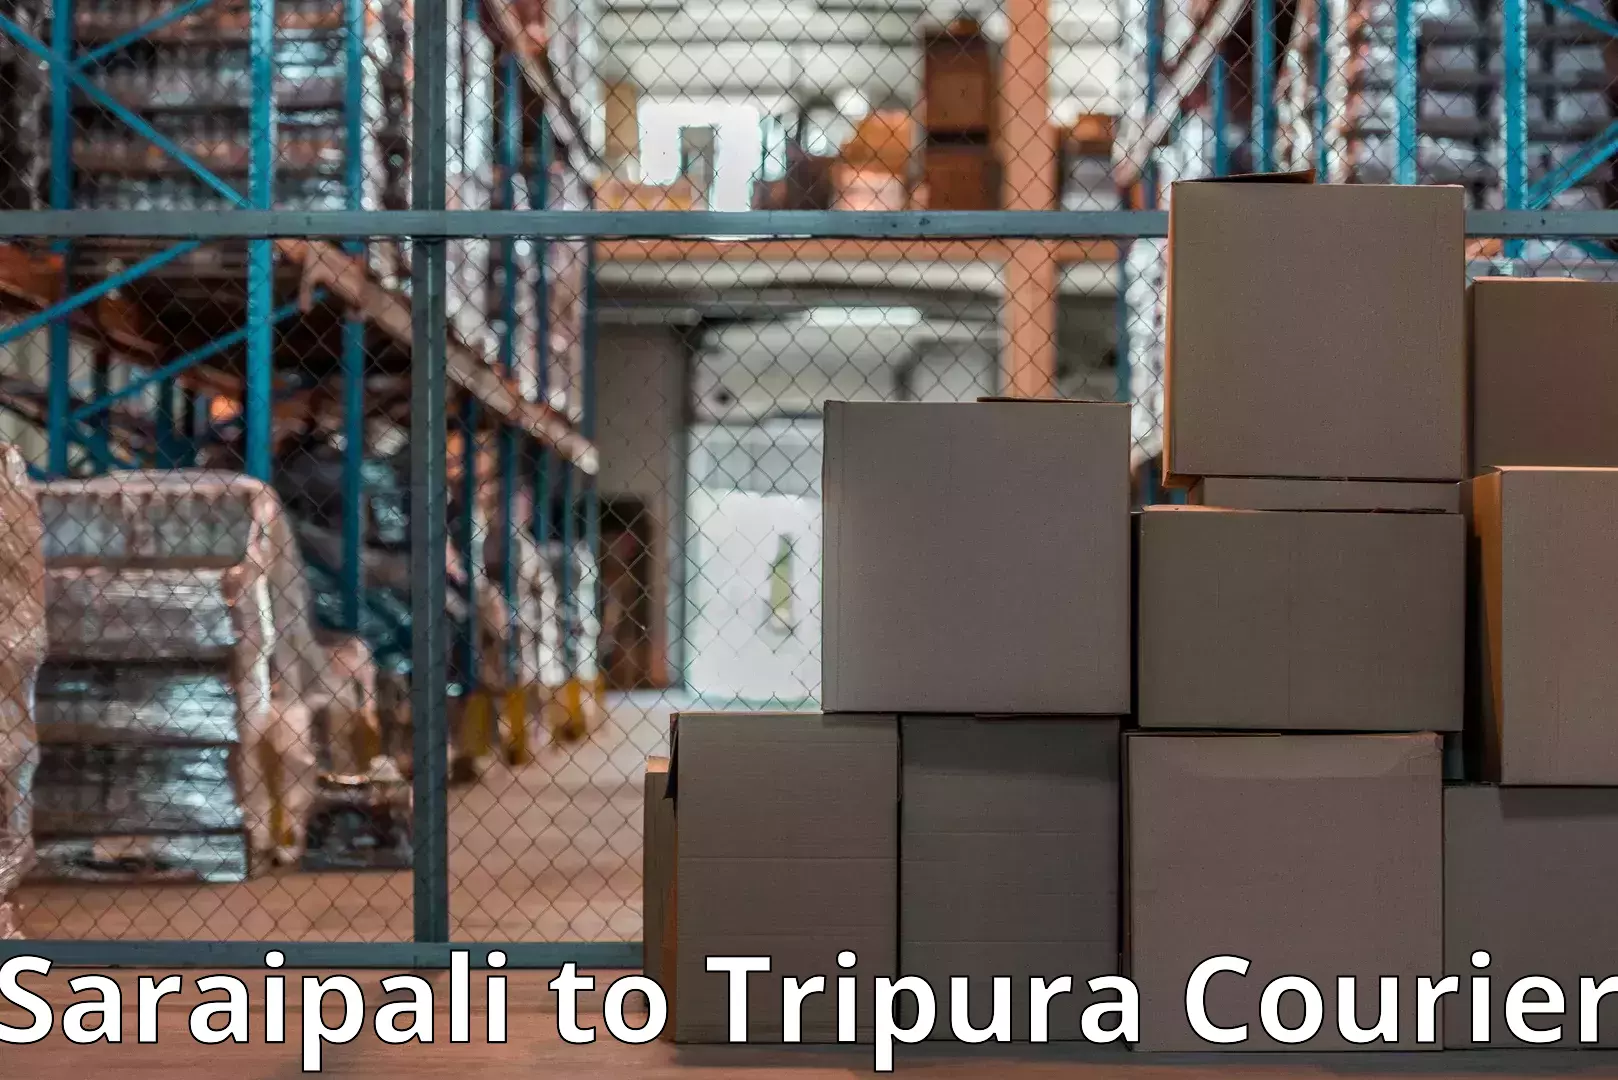 Home moving experts Saraipali to Tripura